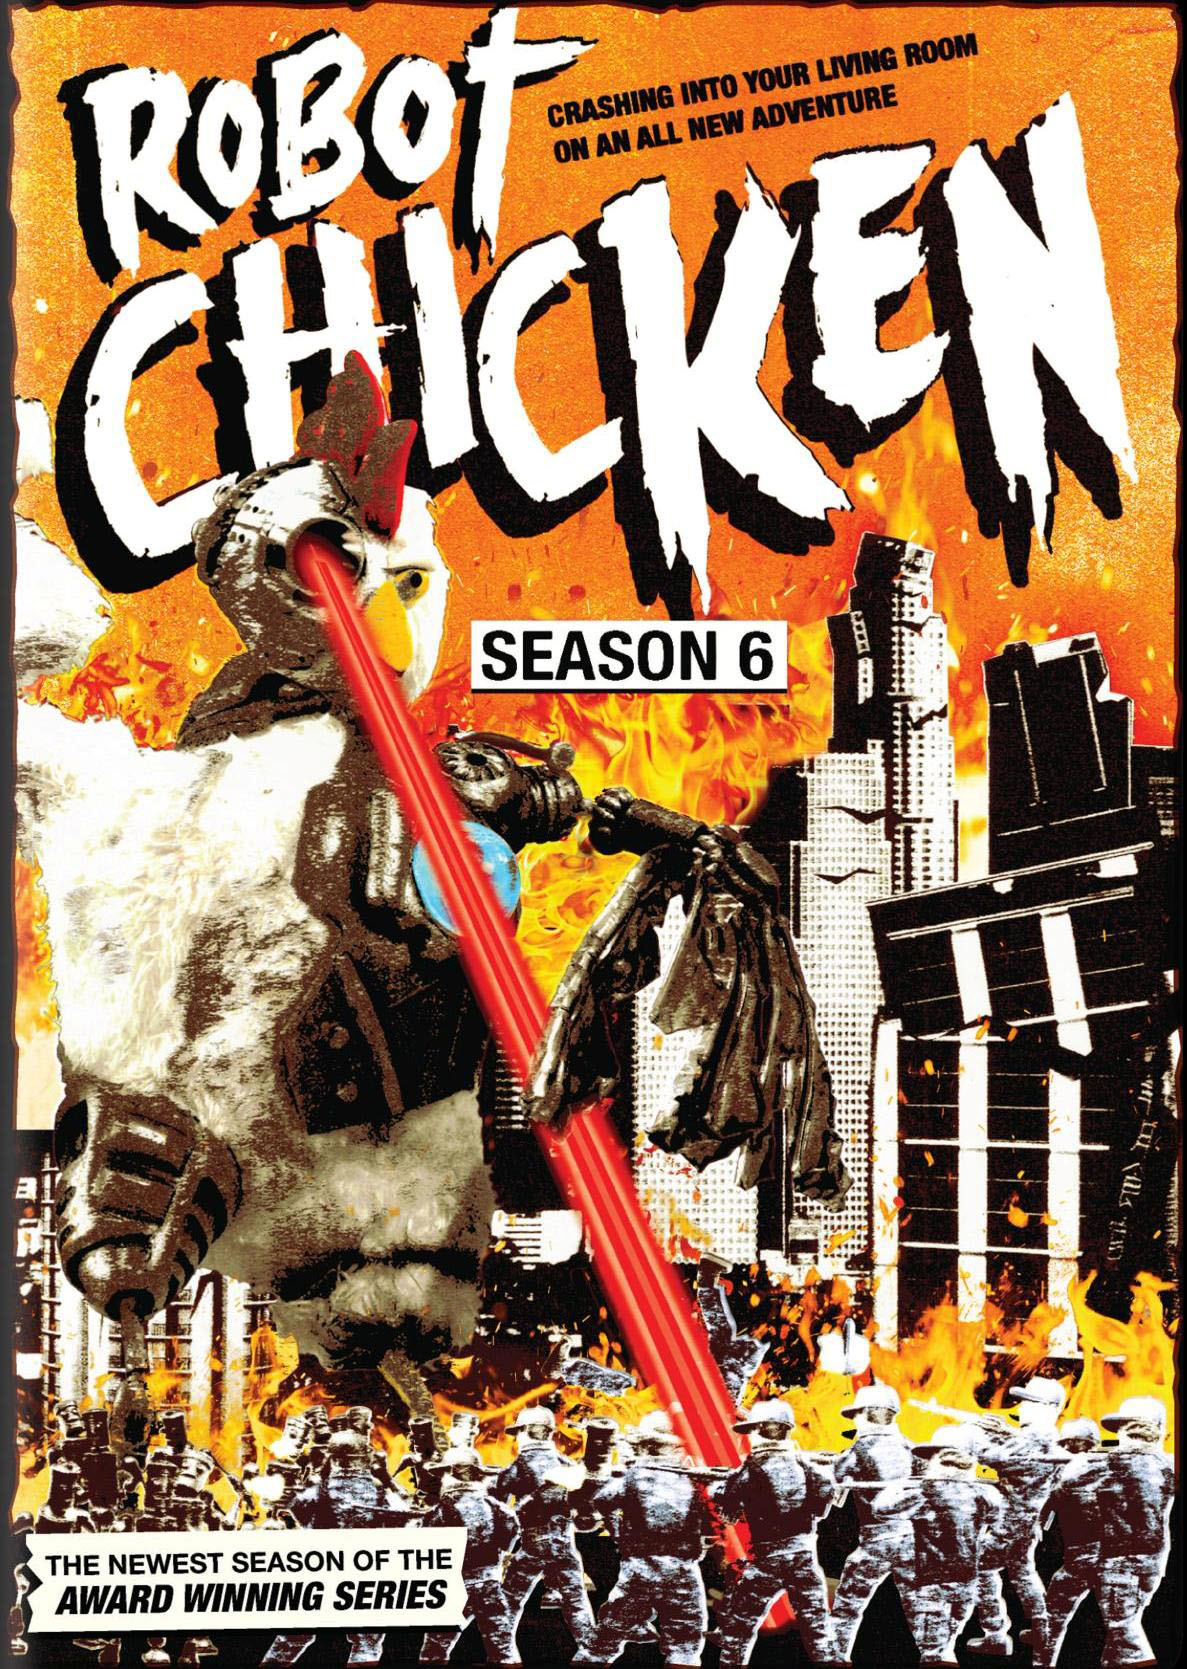 Auto Folkeskole London Robot Chicken: Season 6 [2 Discs] - Best Buy